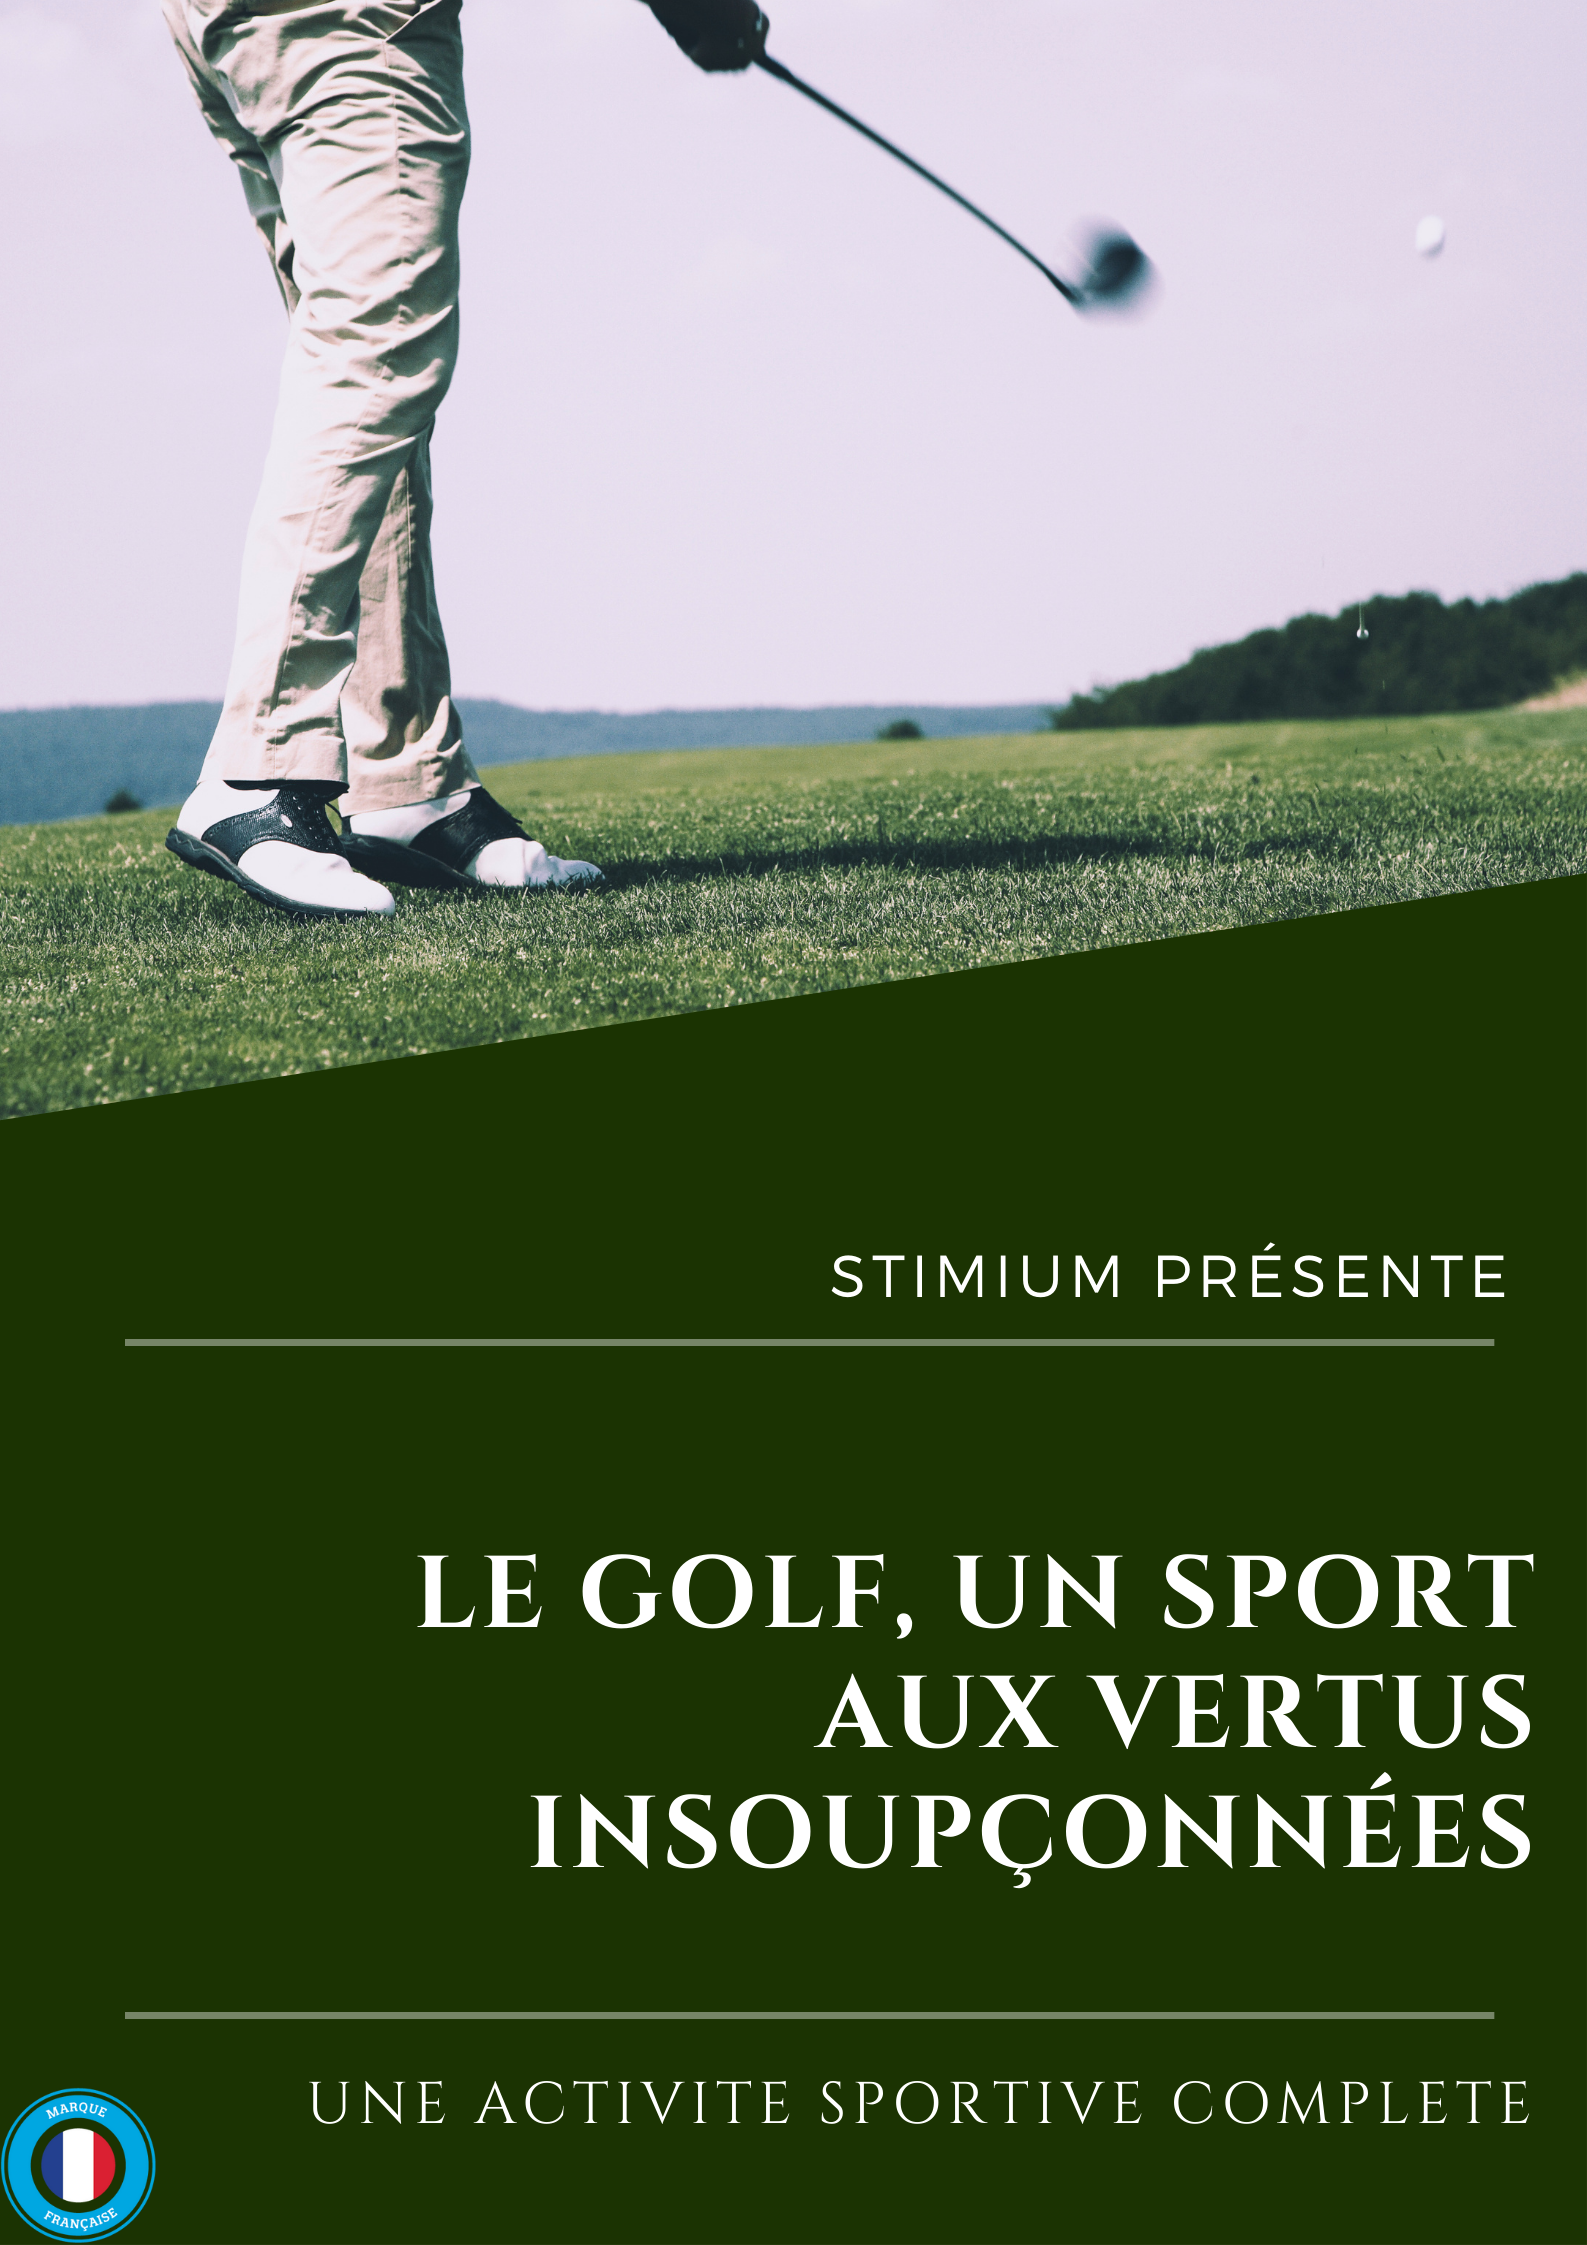 Le Golf, un sport aux vertus insoupçonnées ! - Laboratoires Stimium